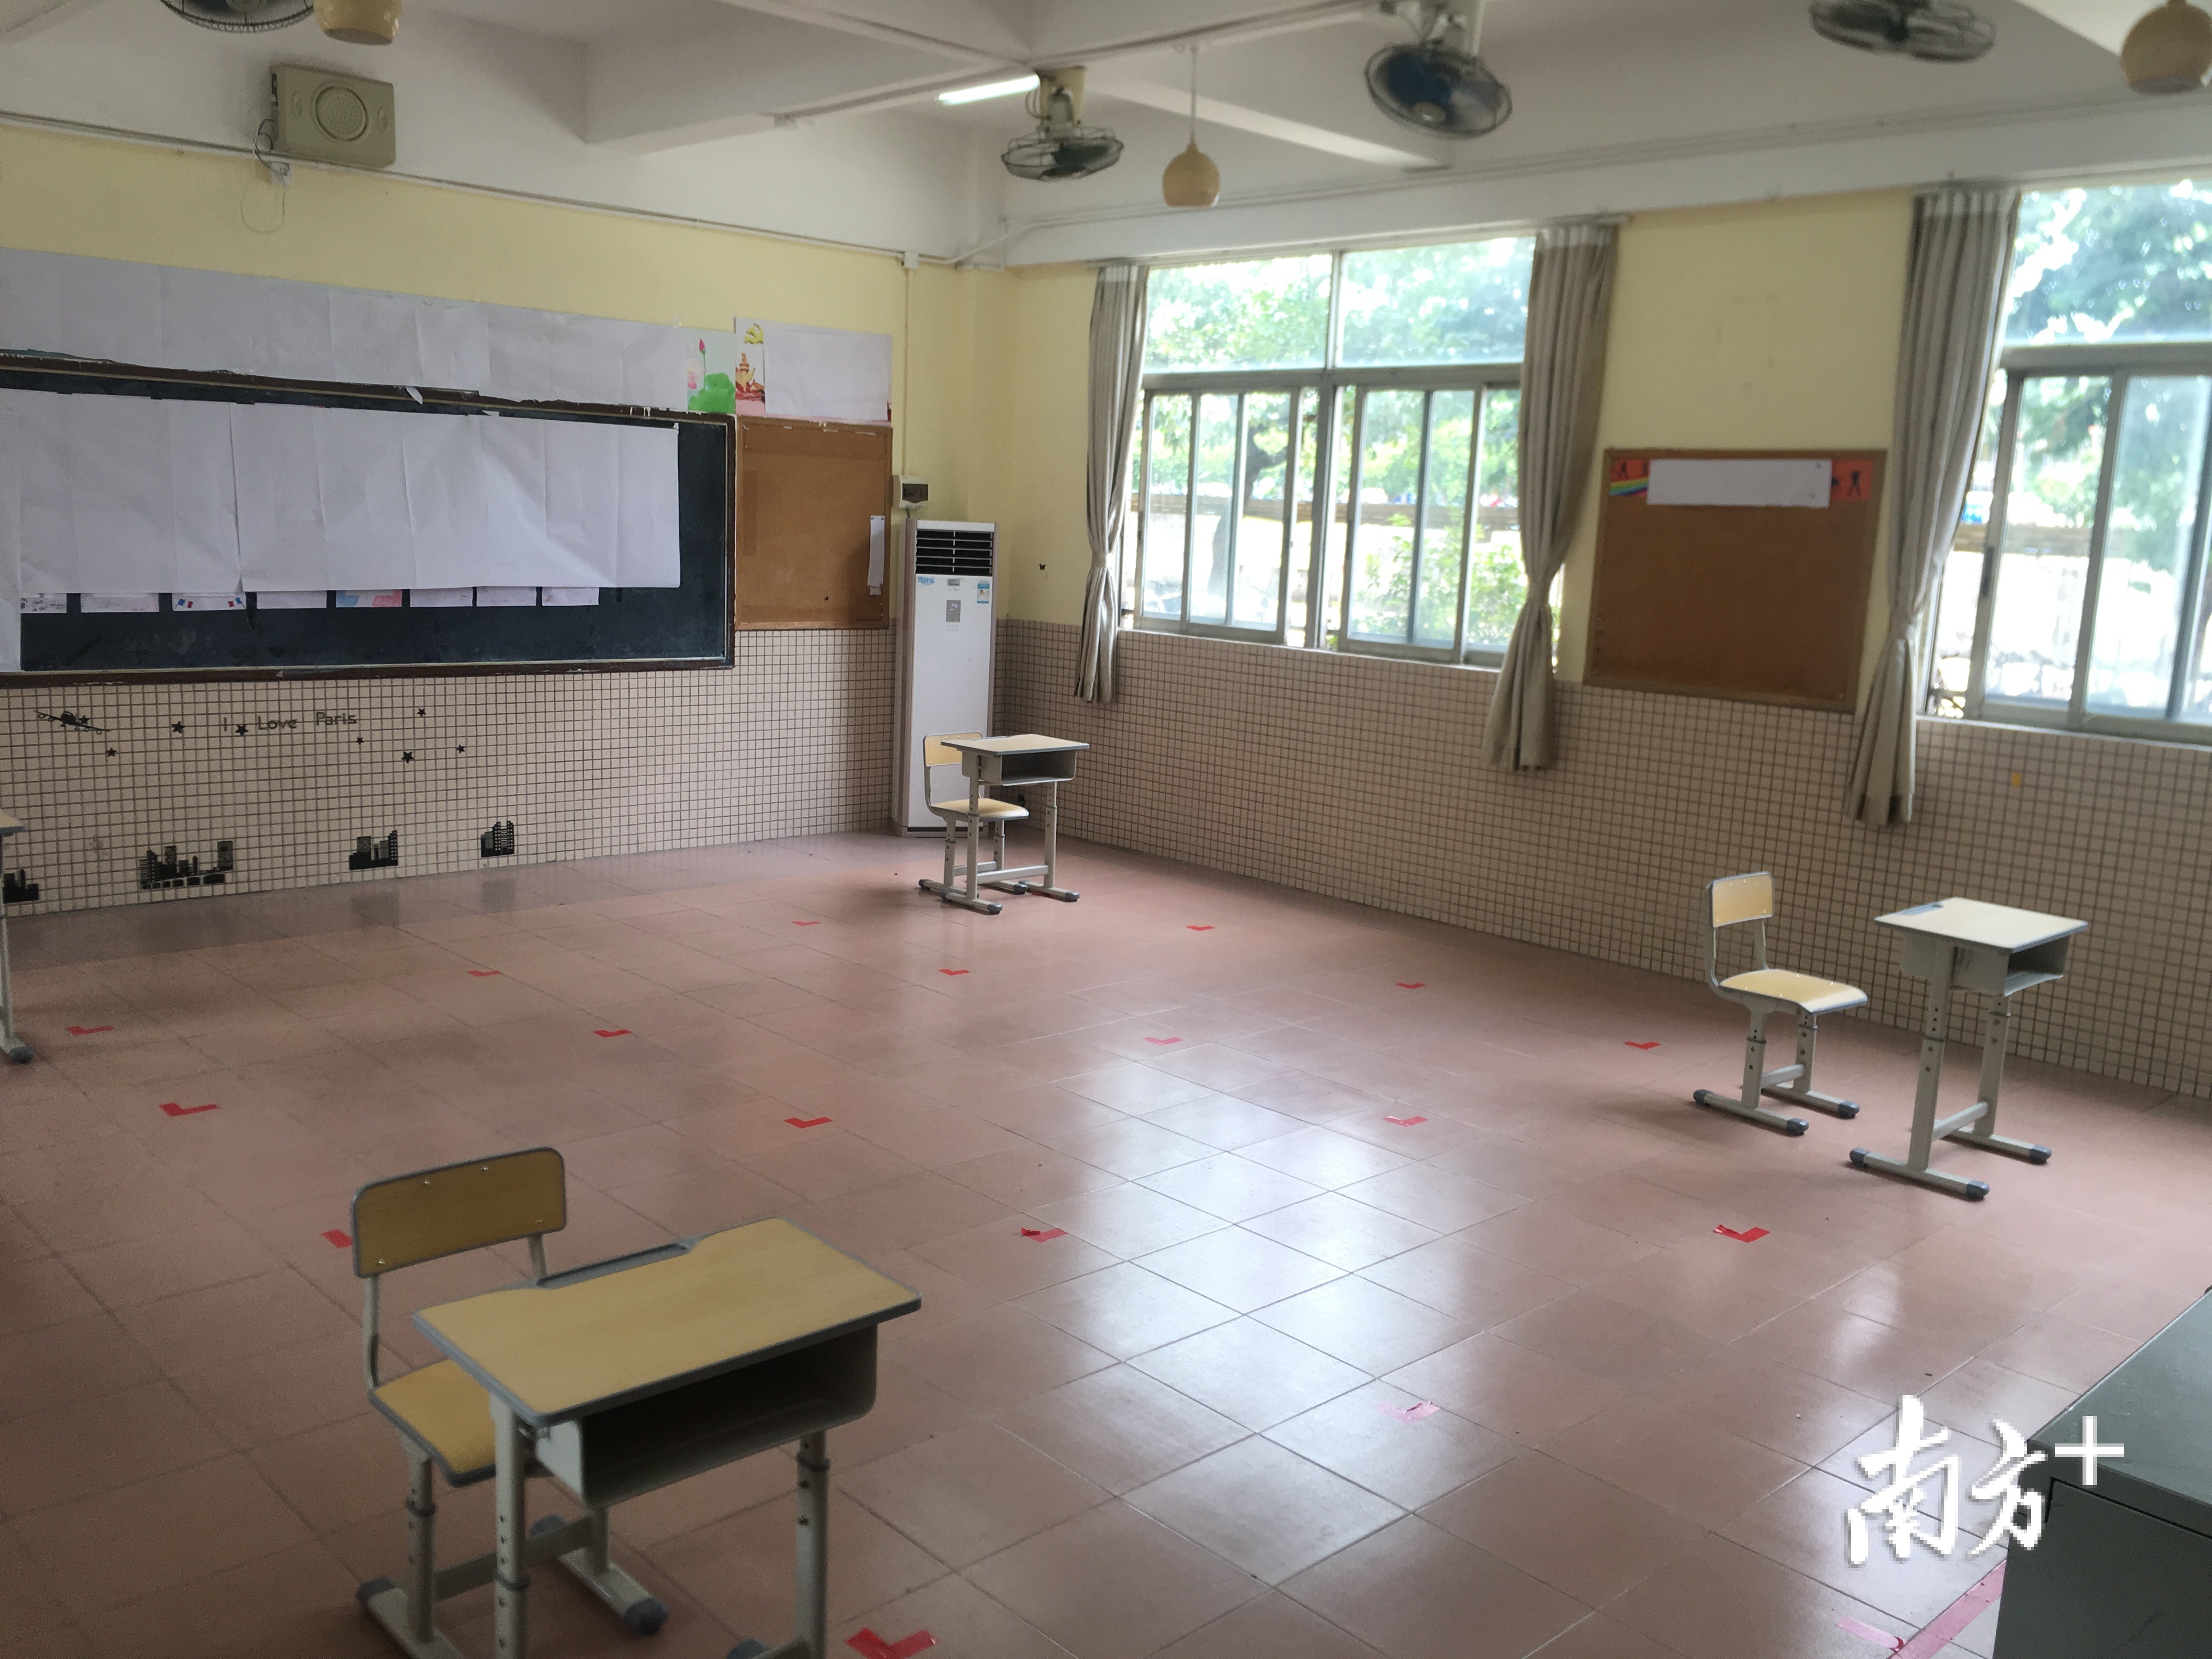 隔离备用考场，安排了4张课桌分布在课室的四角。